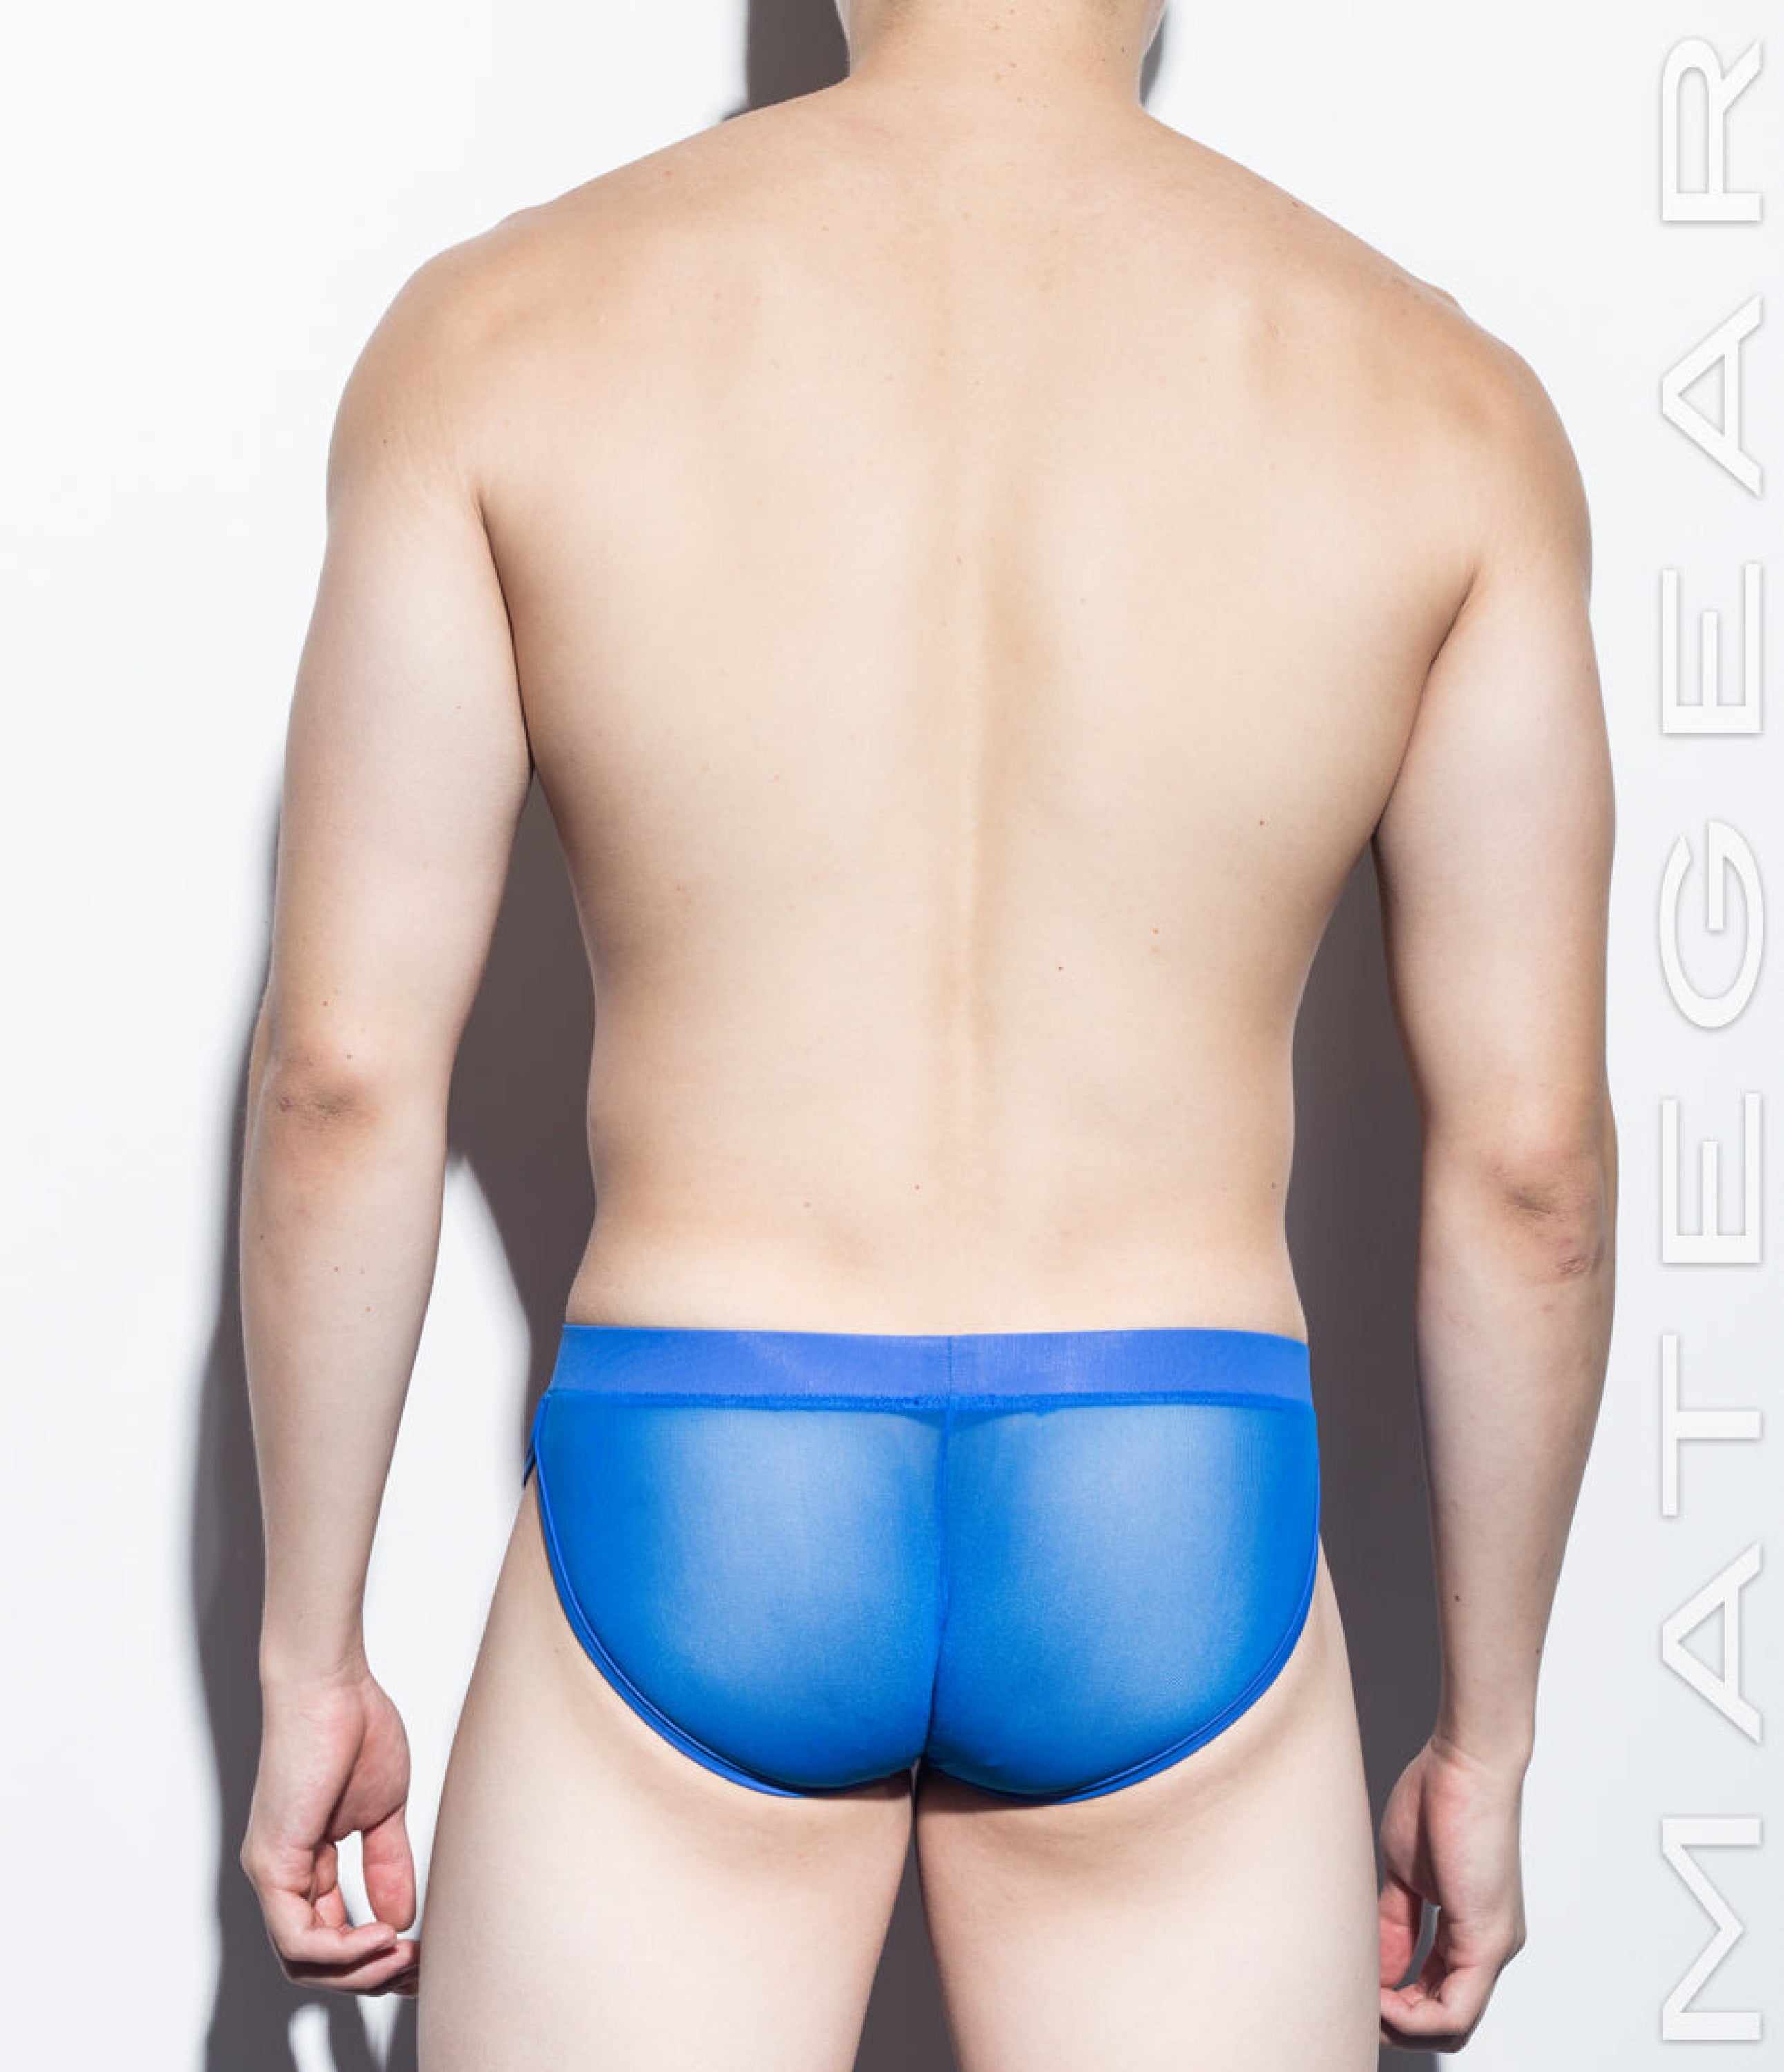 Sexy Men's Loungewear Xpression Mini Shorts - Du Mi (Open Back) – MATEGEAR  - Sexy Men's Swimwear, Underwear, Sportswear and Loungewear